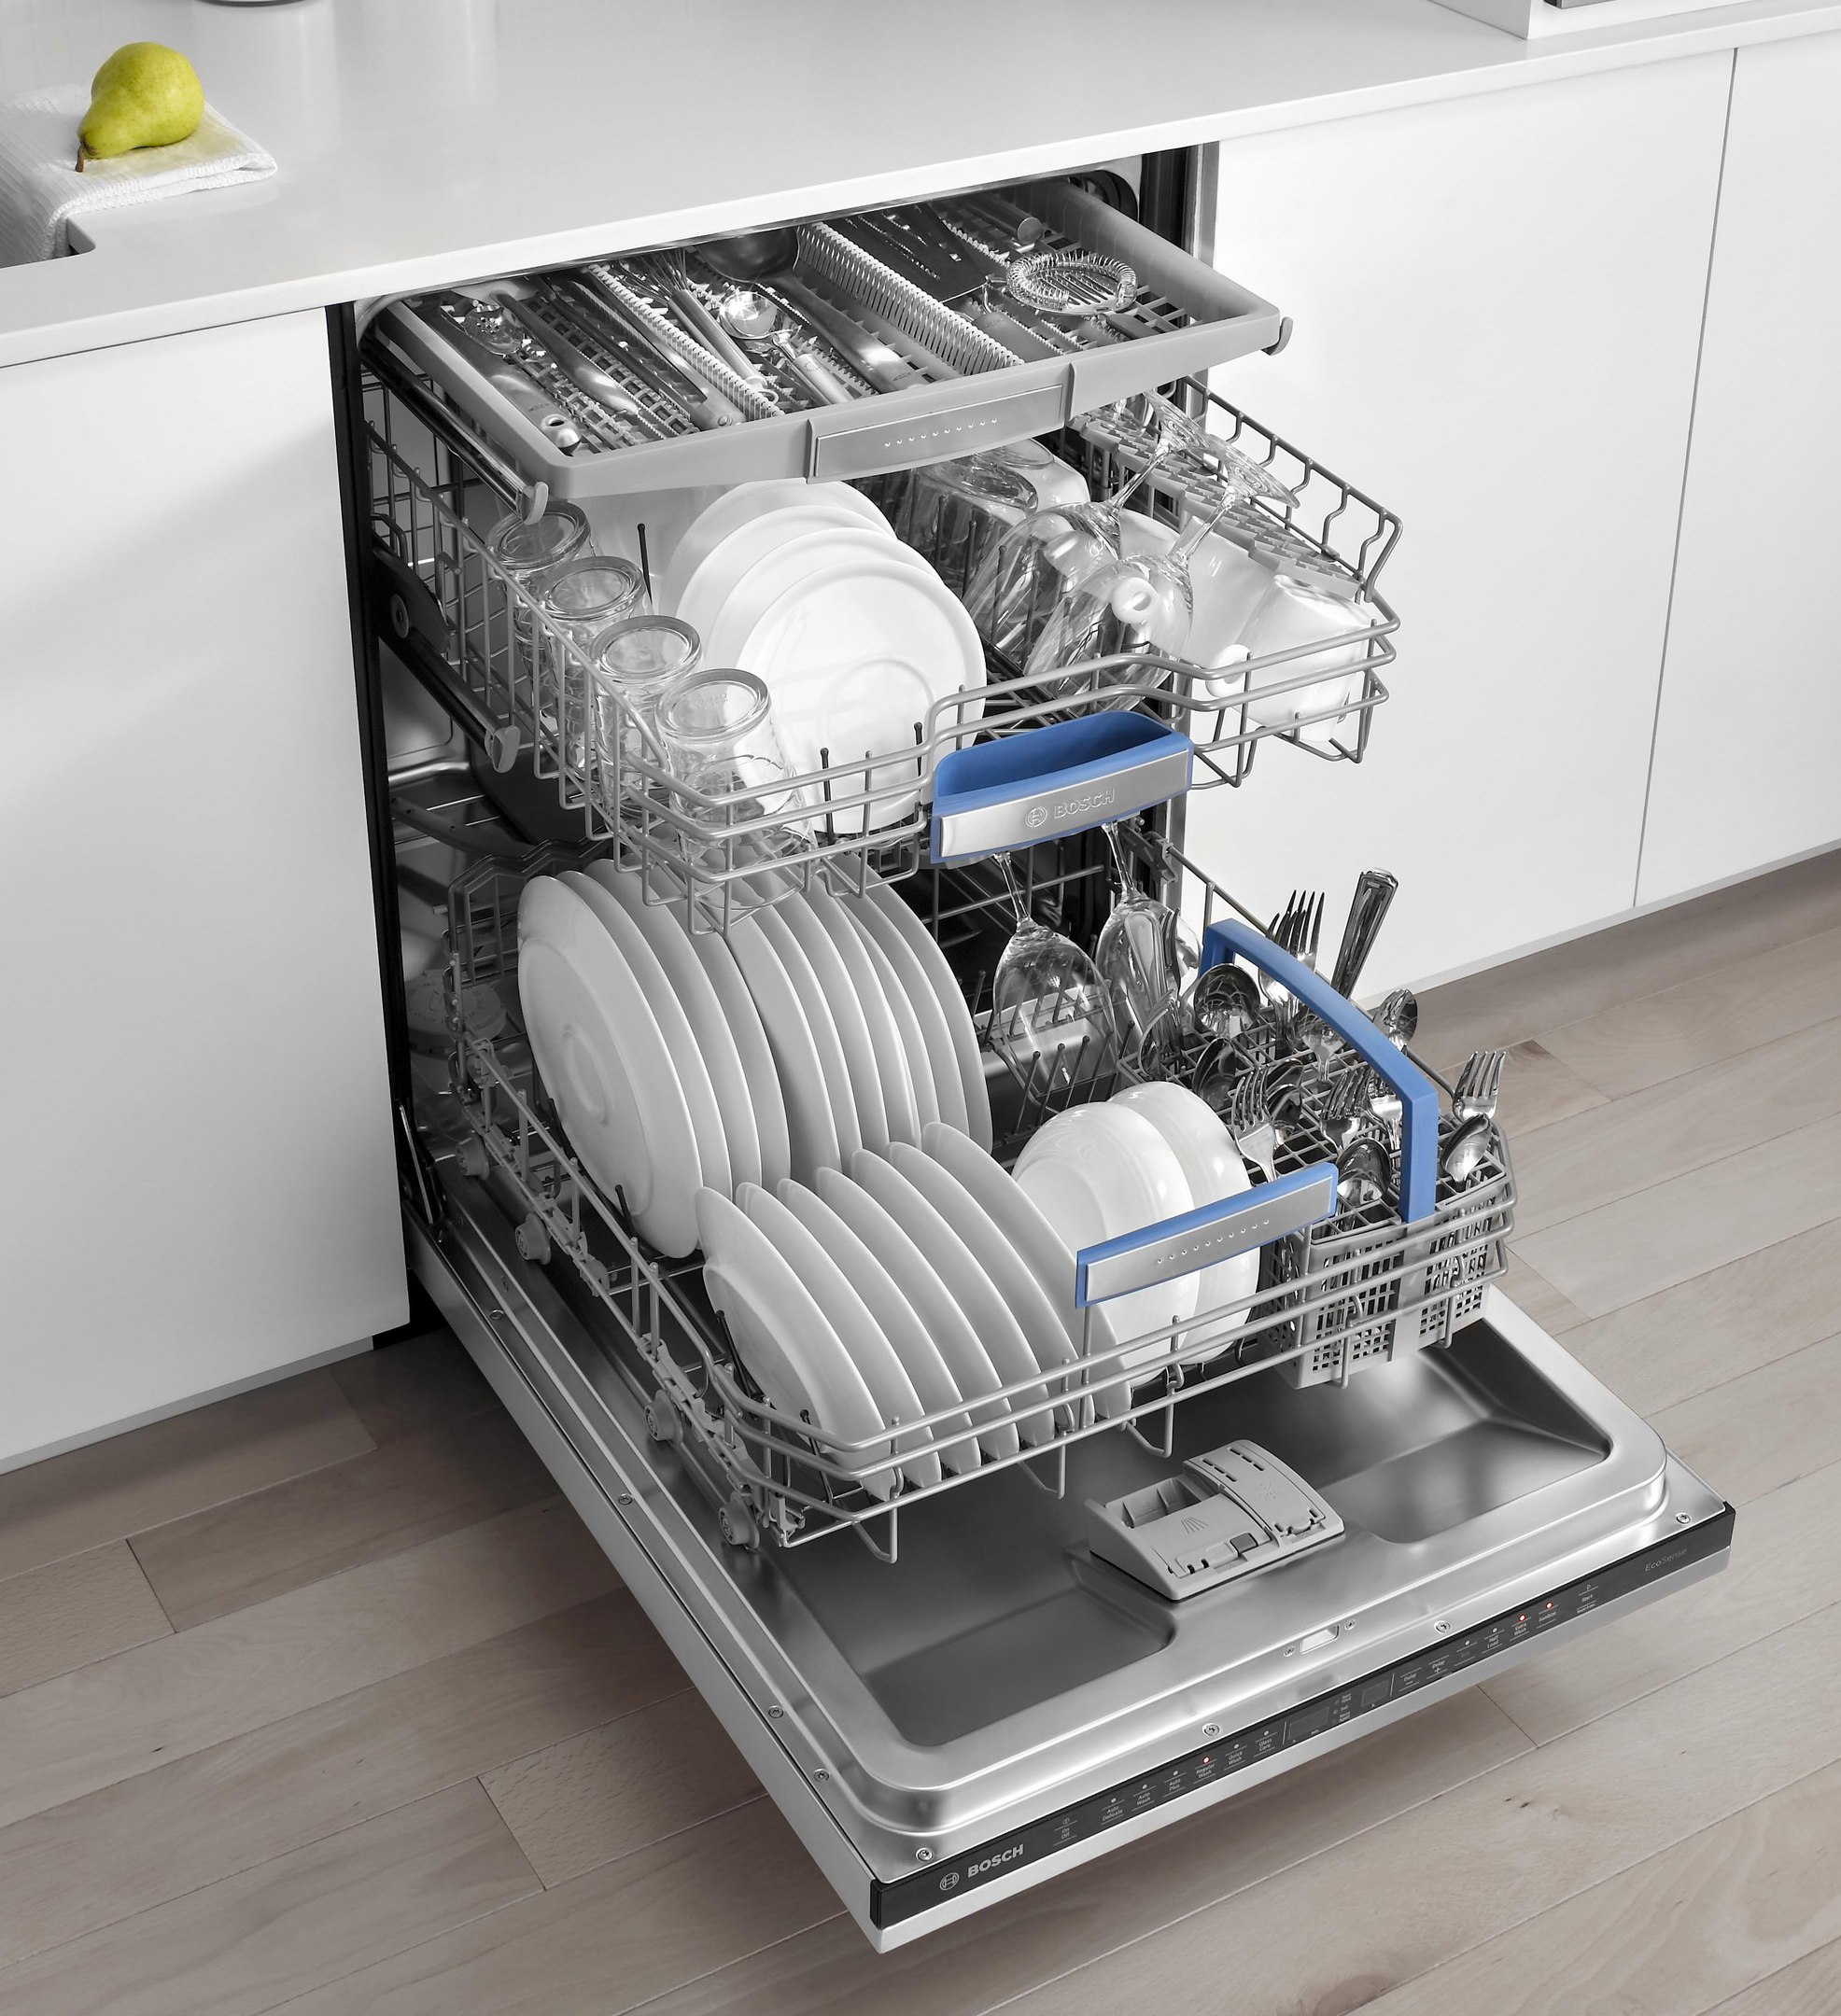 Посудомоечная машина 1700. Правильная загрузка посудомоечной машины Bosch 45 см. Посудомоечная машина Dishwasher Drawers. Посудомойка бош загрузка посуды. Посудомоечная машина комплектация Bosch services 6.